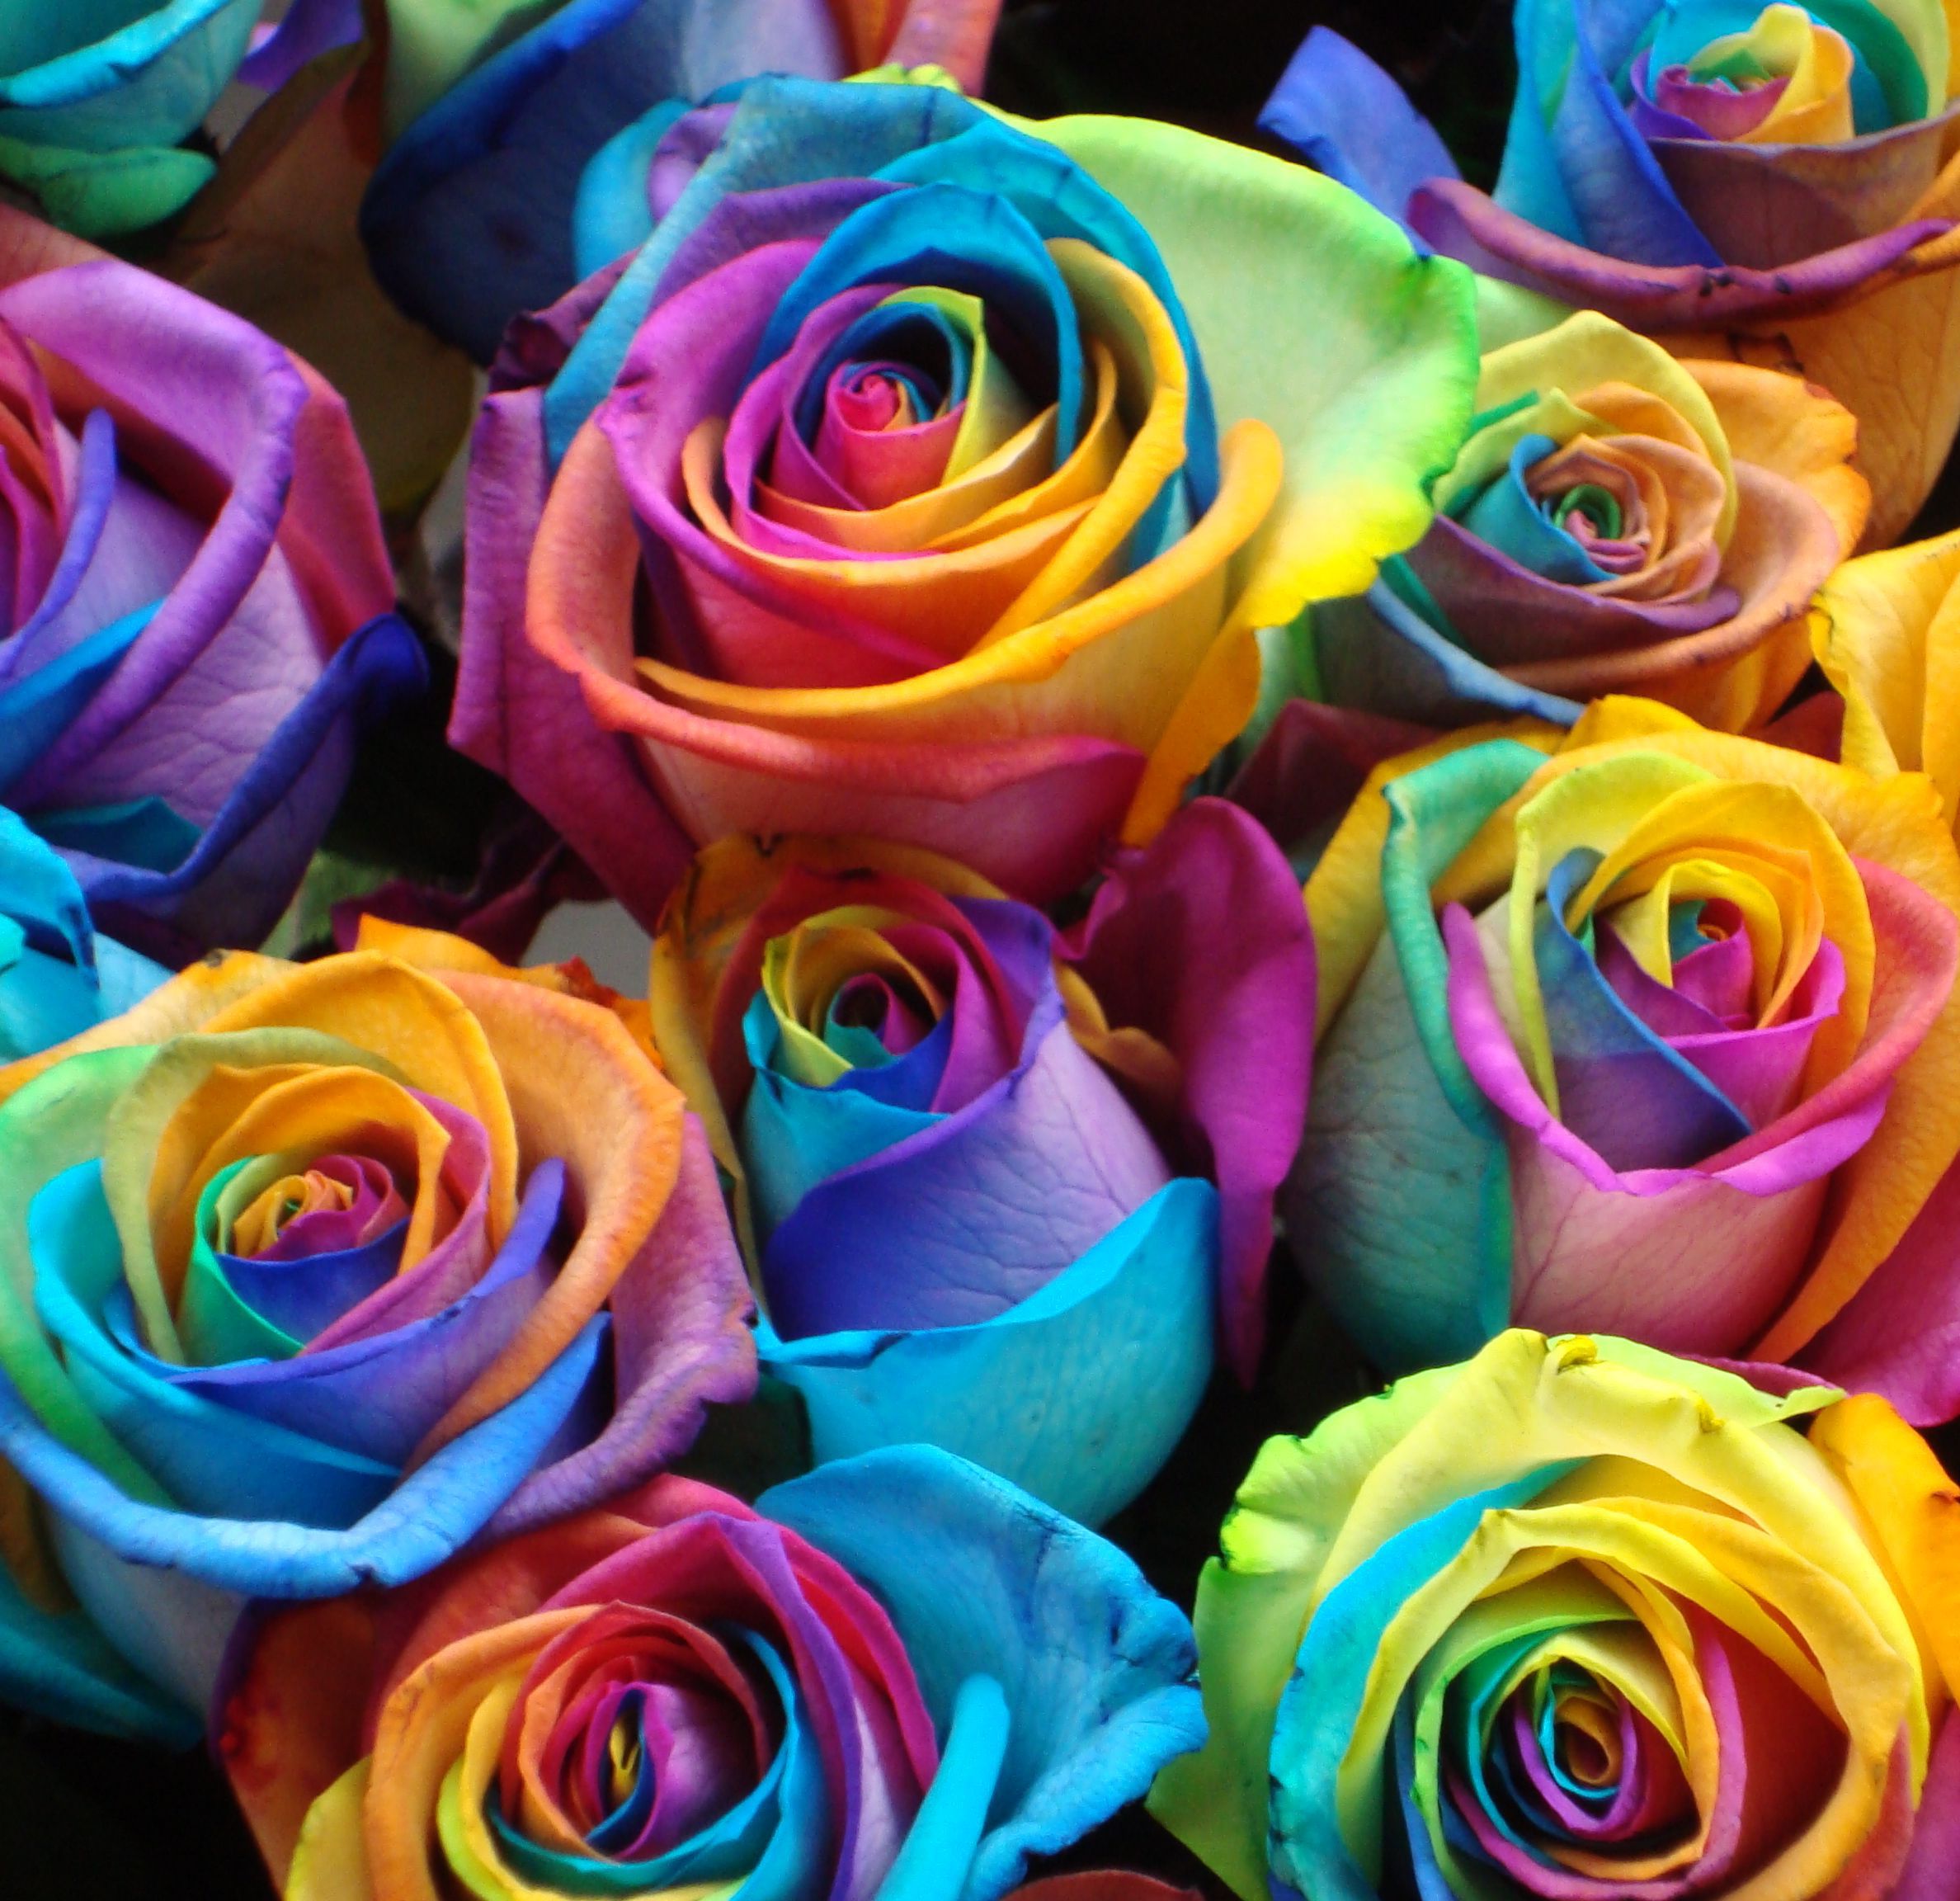 Фото в цвете. Роза Рейнбоу. Роза Радуга эфиромасличная. Разноцветные розы. Радужные цветы.